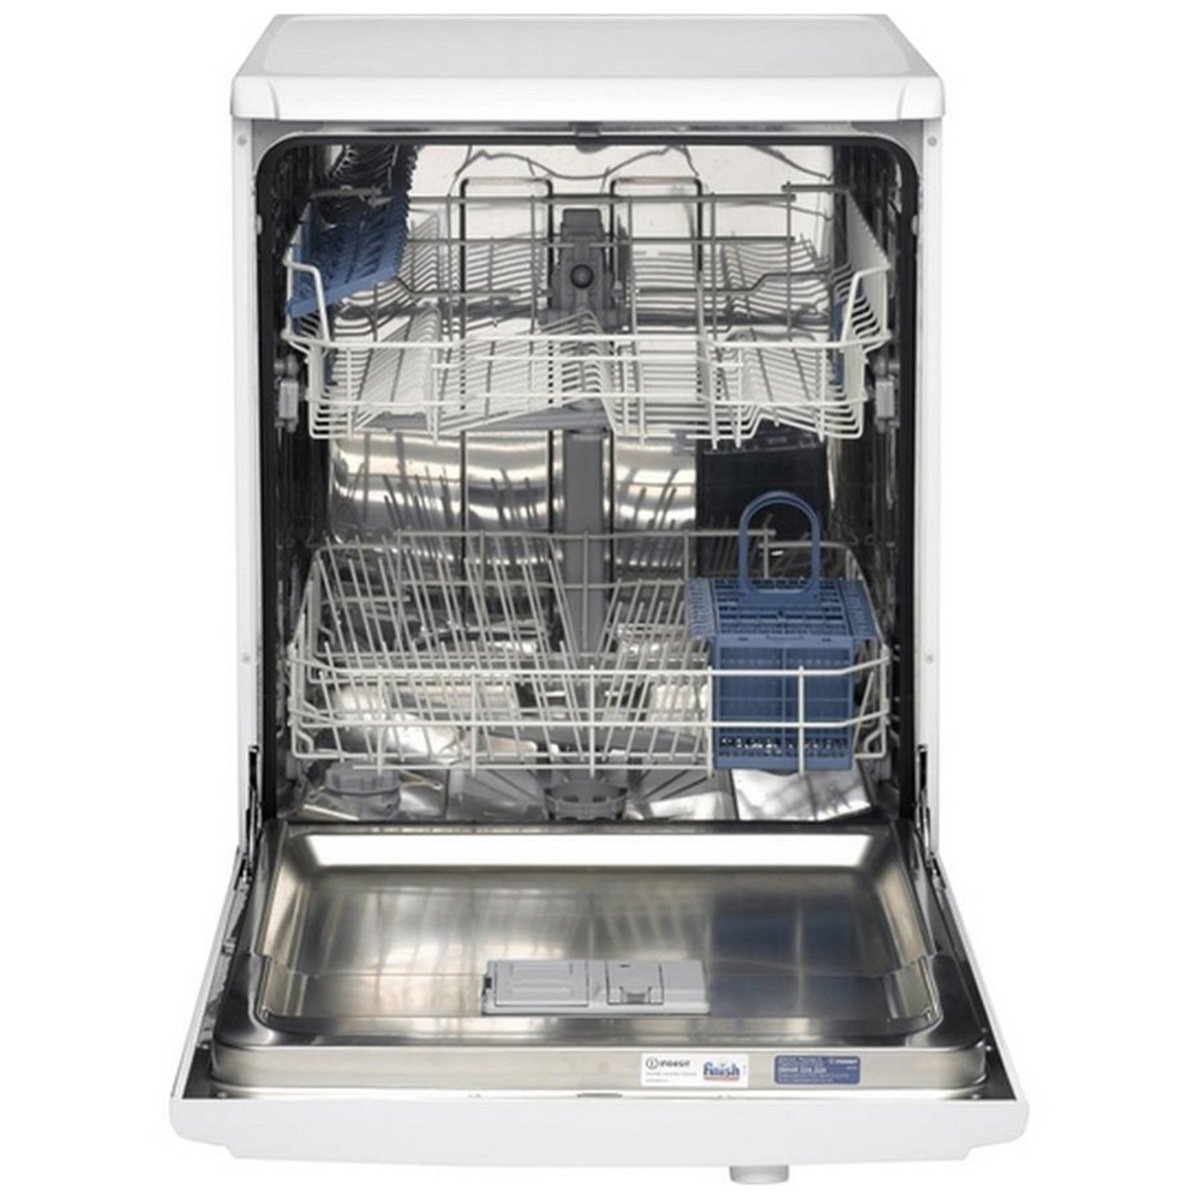 Indesit Dishwasher DFG15B1 5 Programs